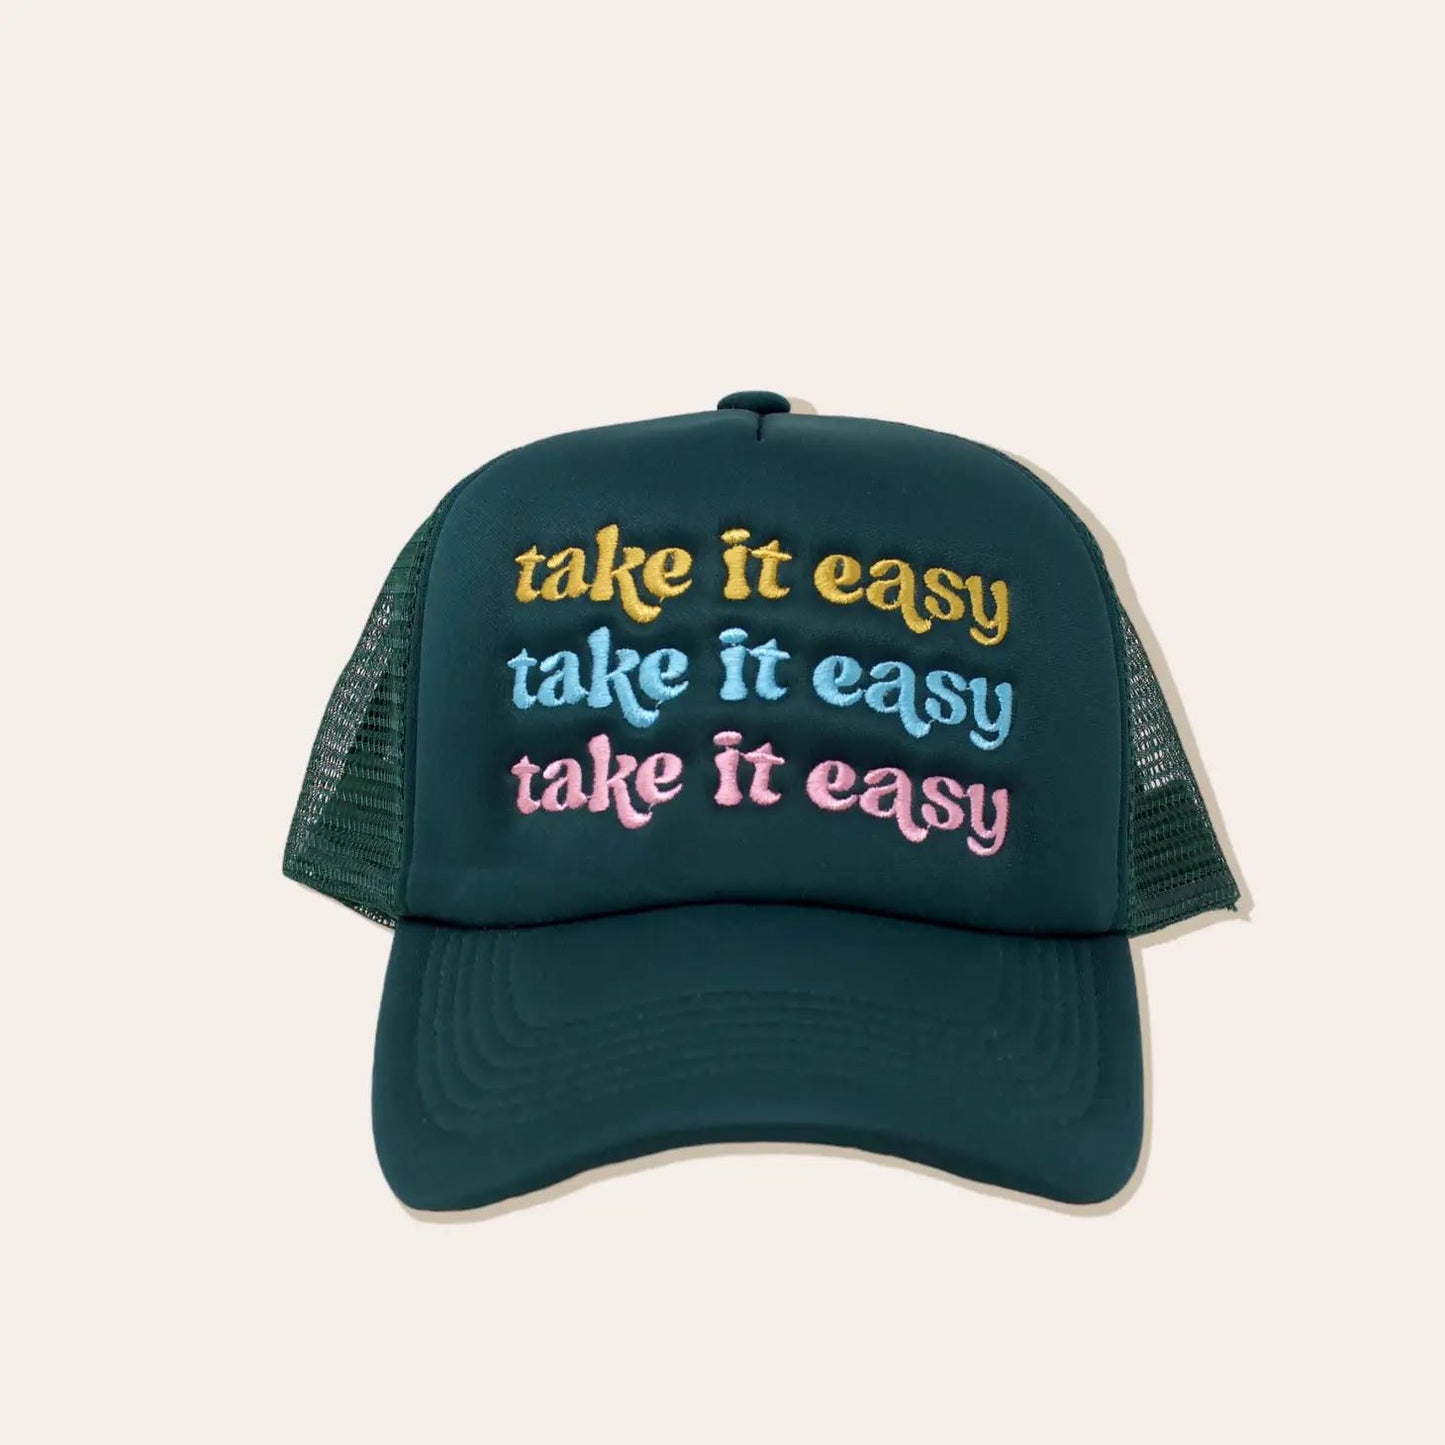 take it easy trucker hat